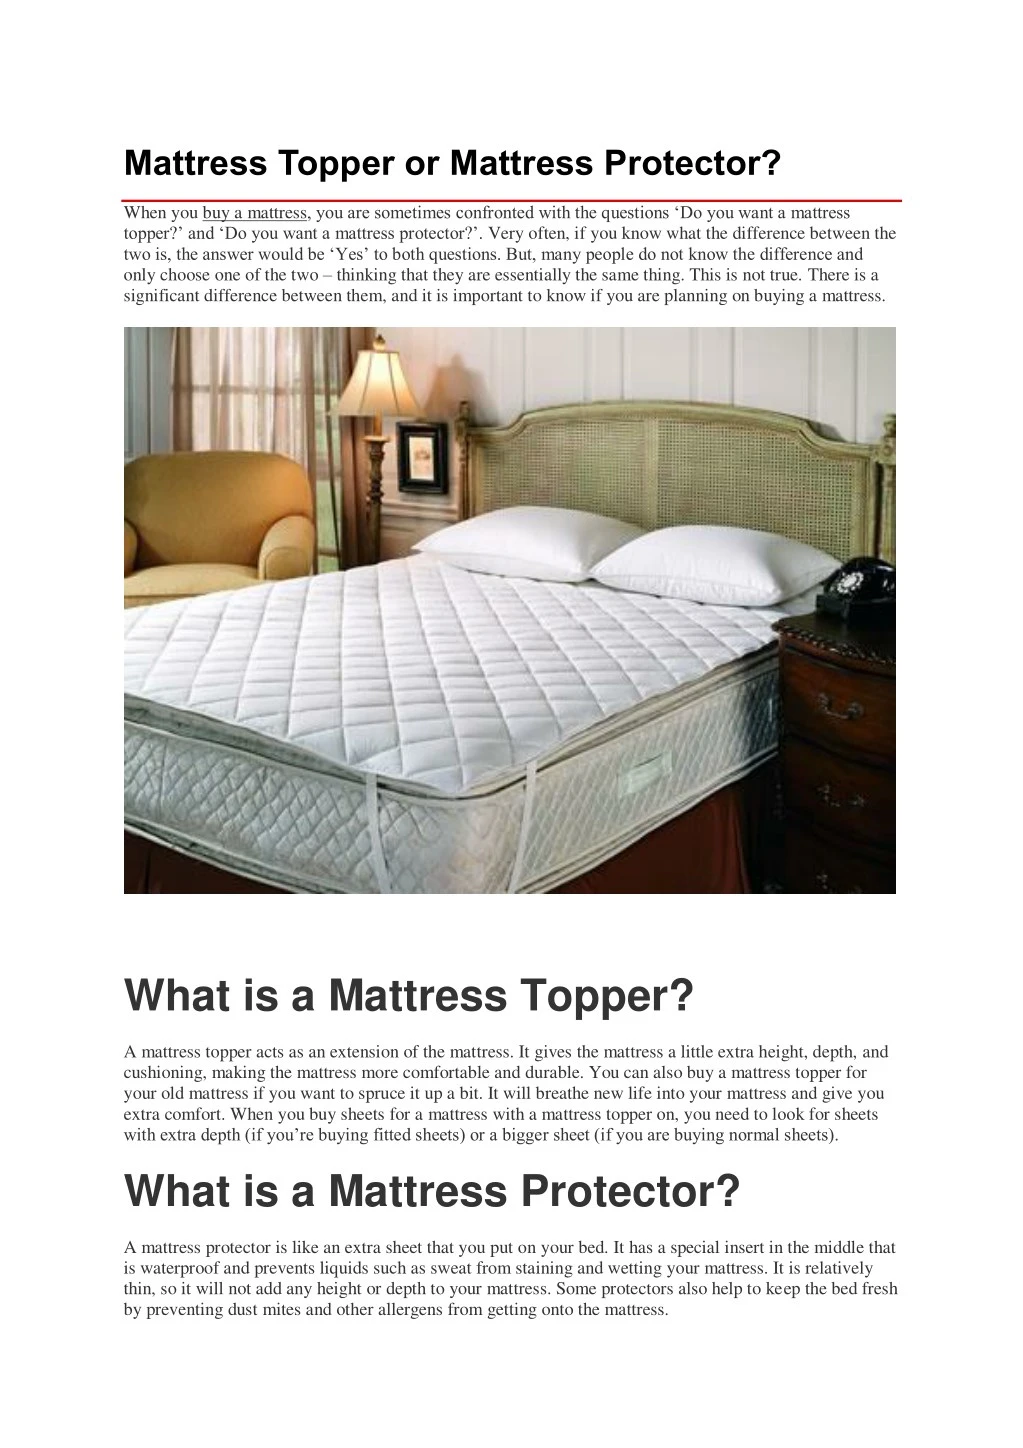 mattress topper or mattress protector n.